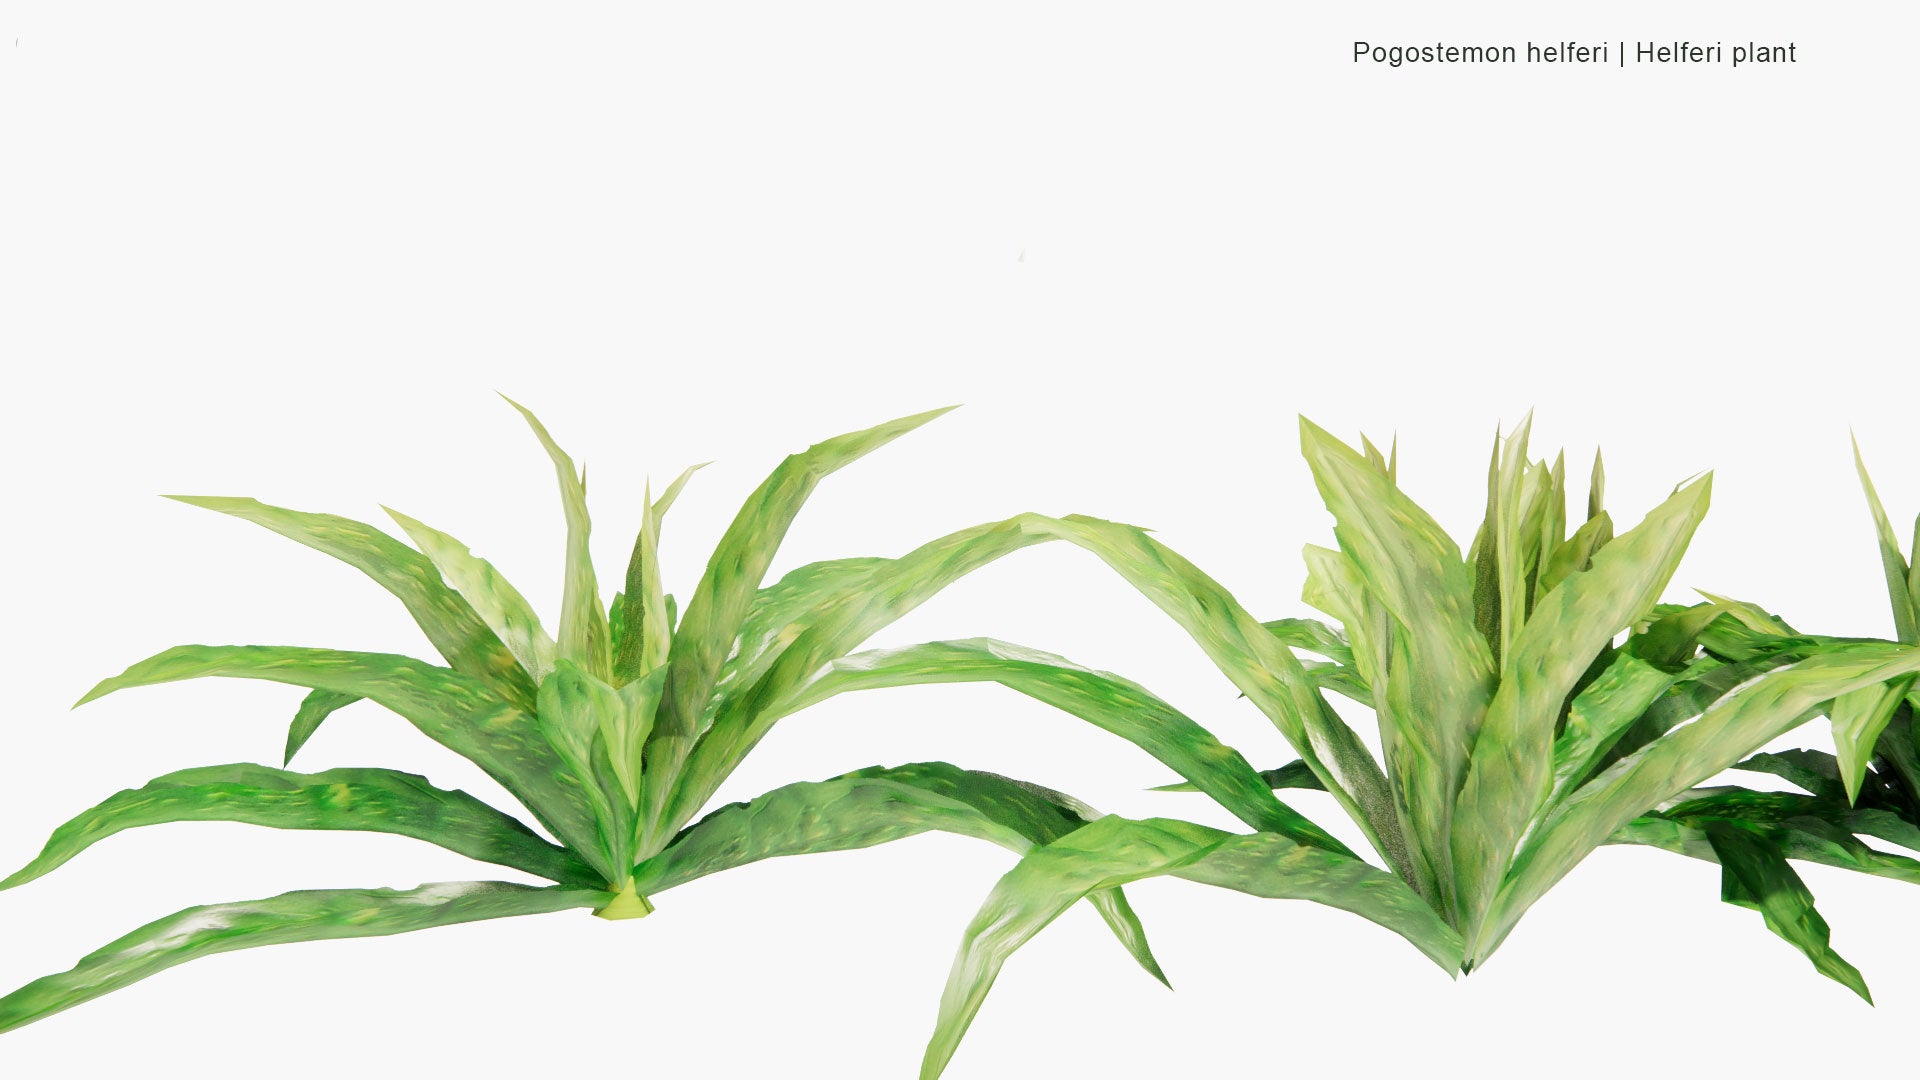 Low Poly Pogostemon Helferi - Helferi Plant (3D Model)